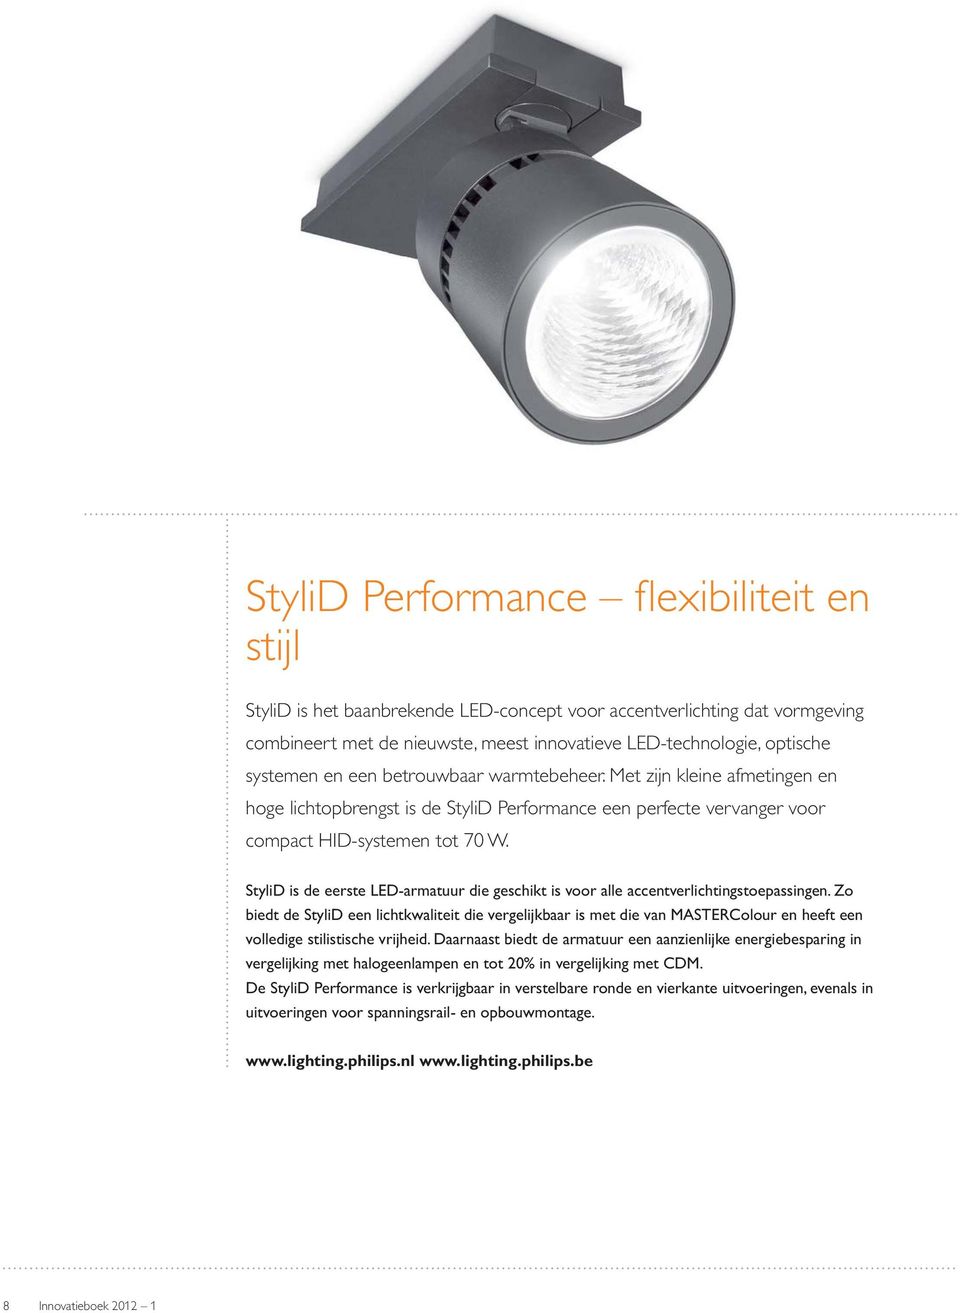 StyliD is de eerste LED-armatuur die geschikt is voor alle accentverlichtingstoepassingen.